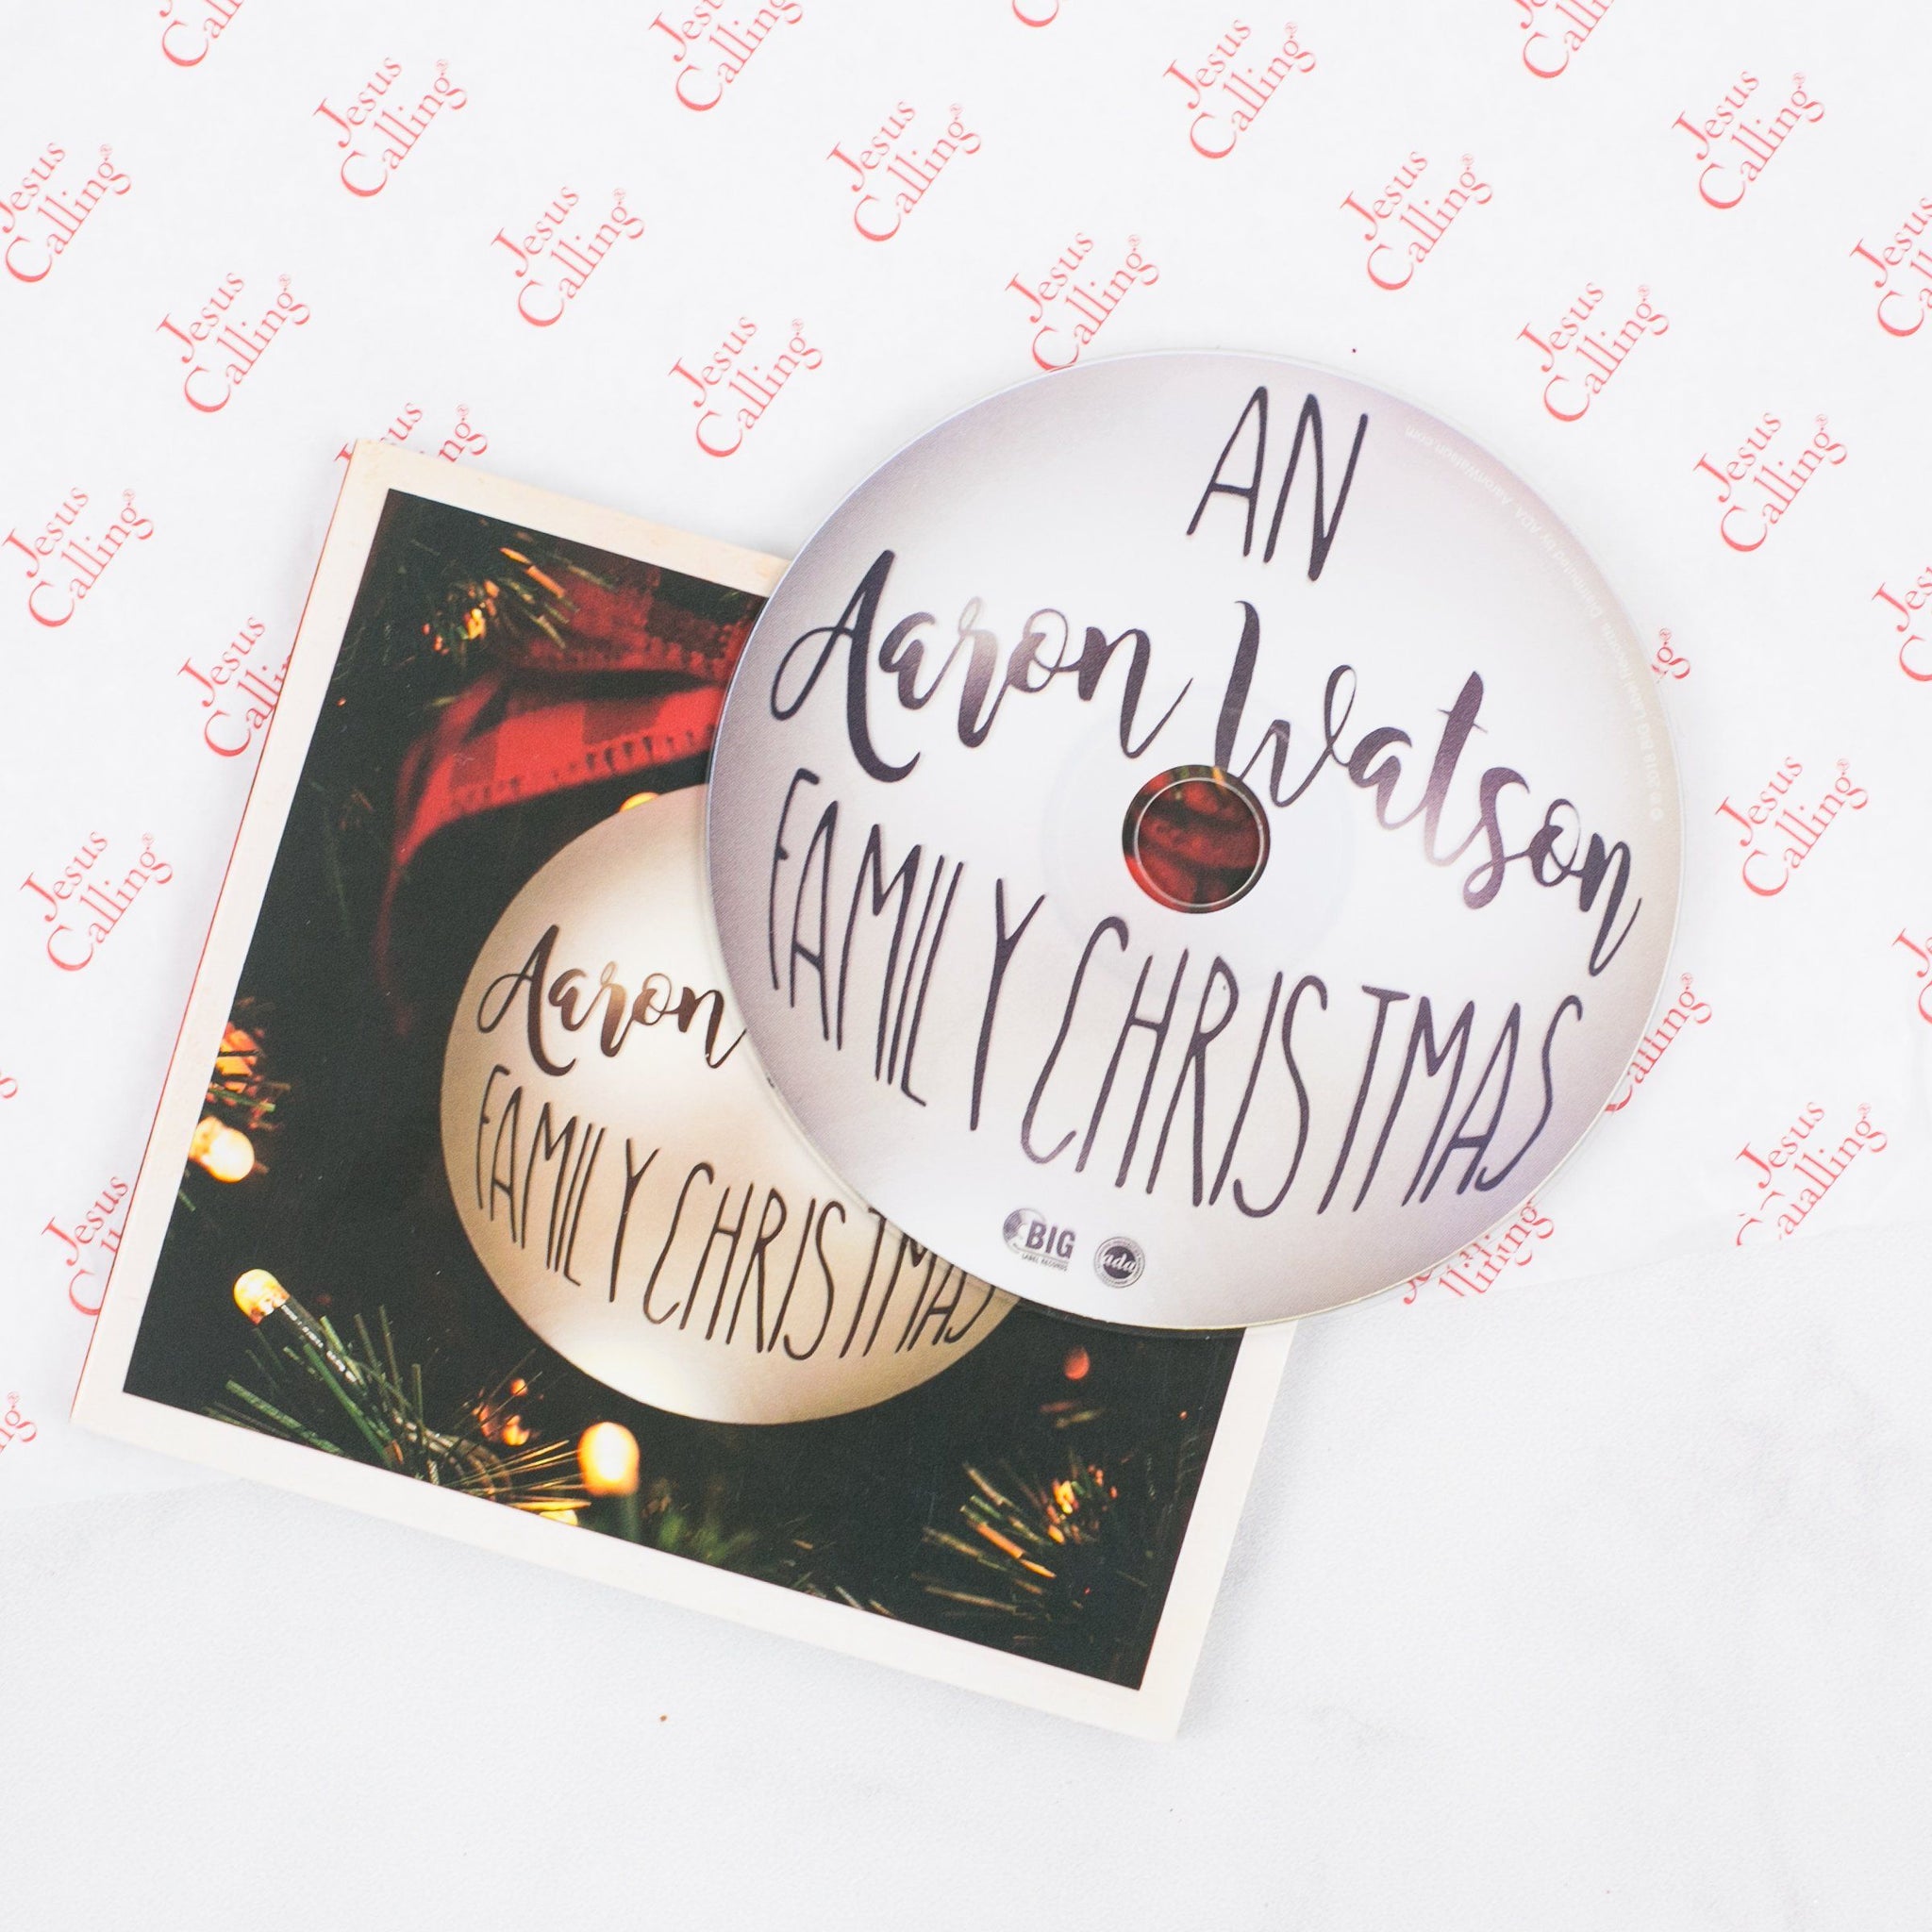 Aaron Watson Christmas CD and Album